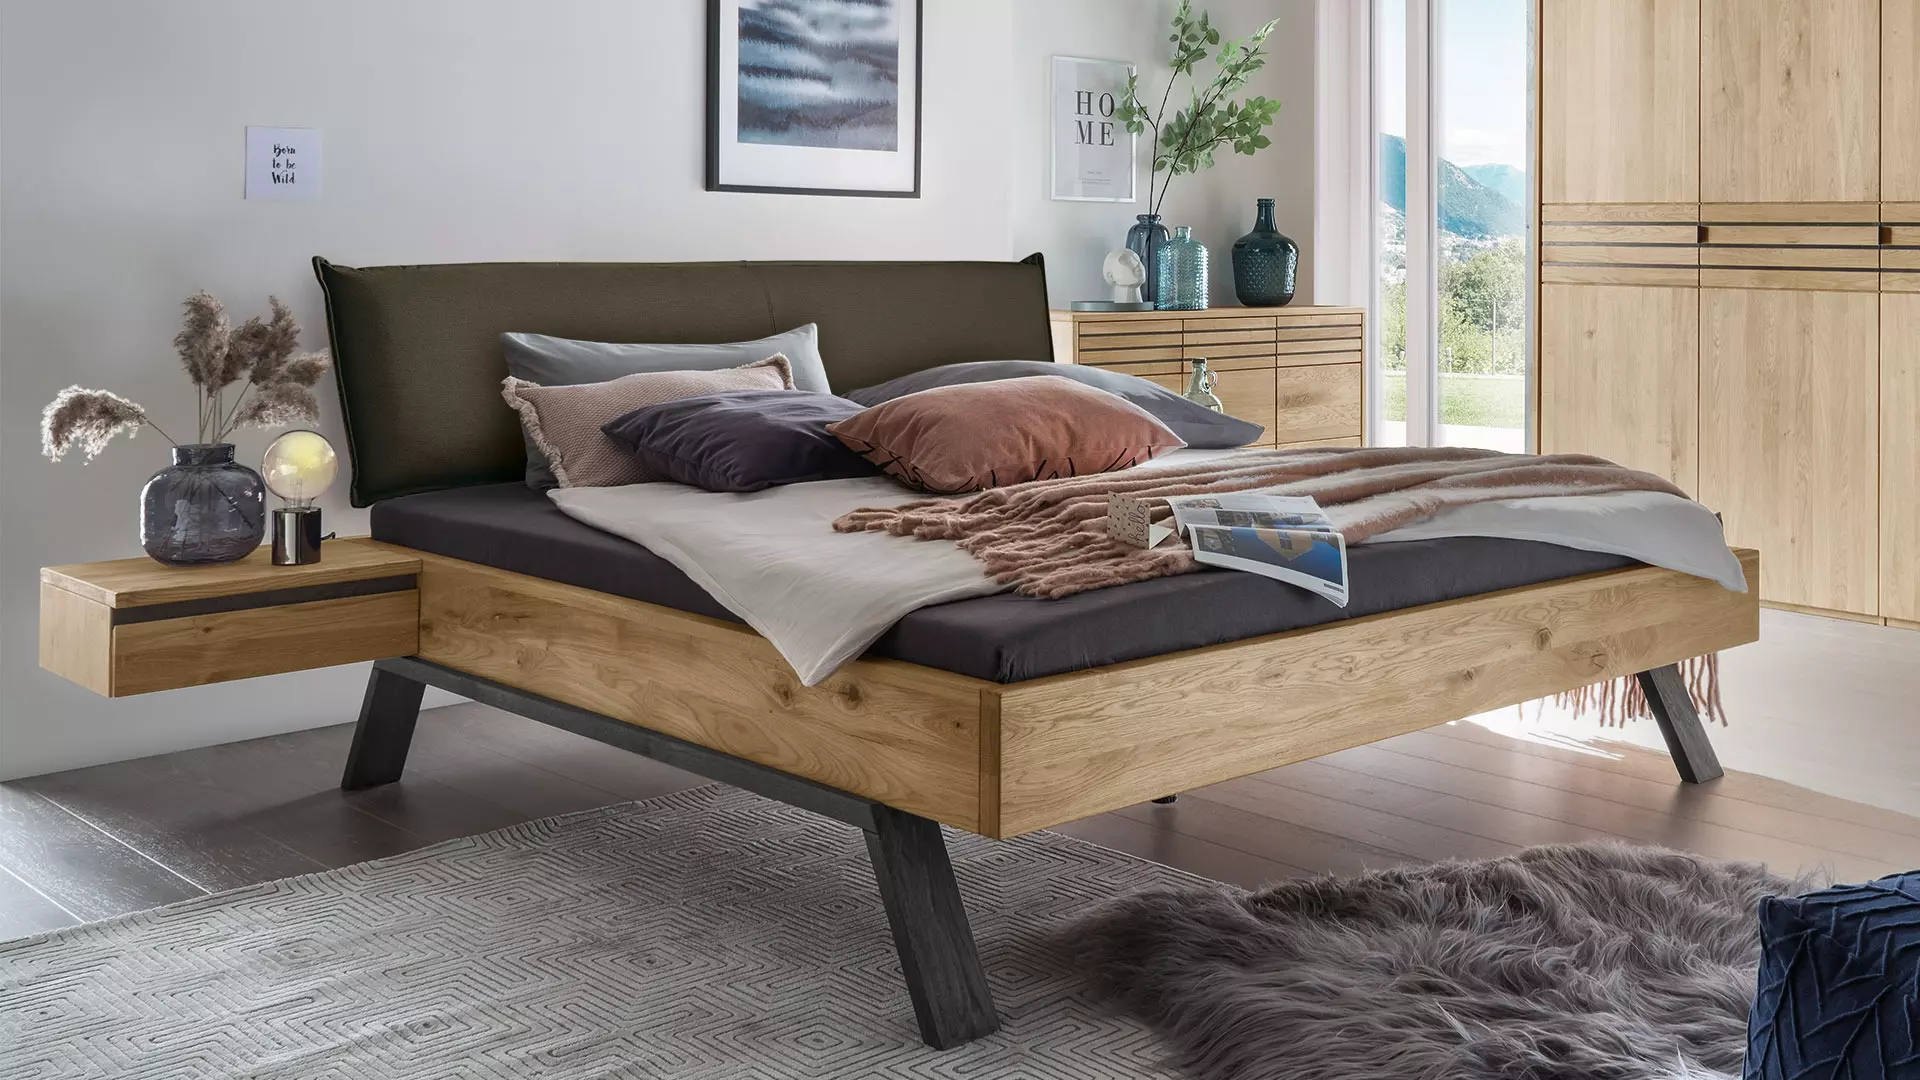 Neras massief houten bed - met gedraaide houten loper in donkergrijs